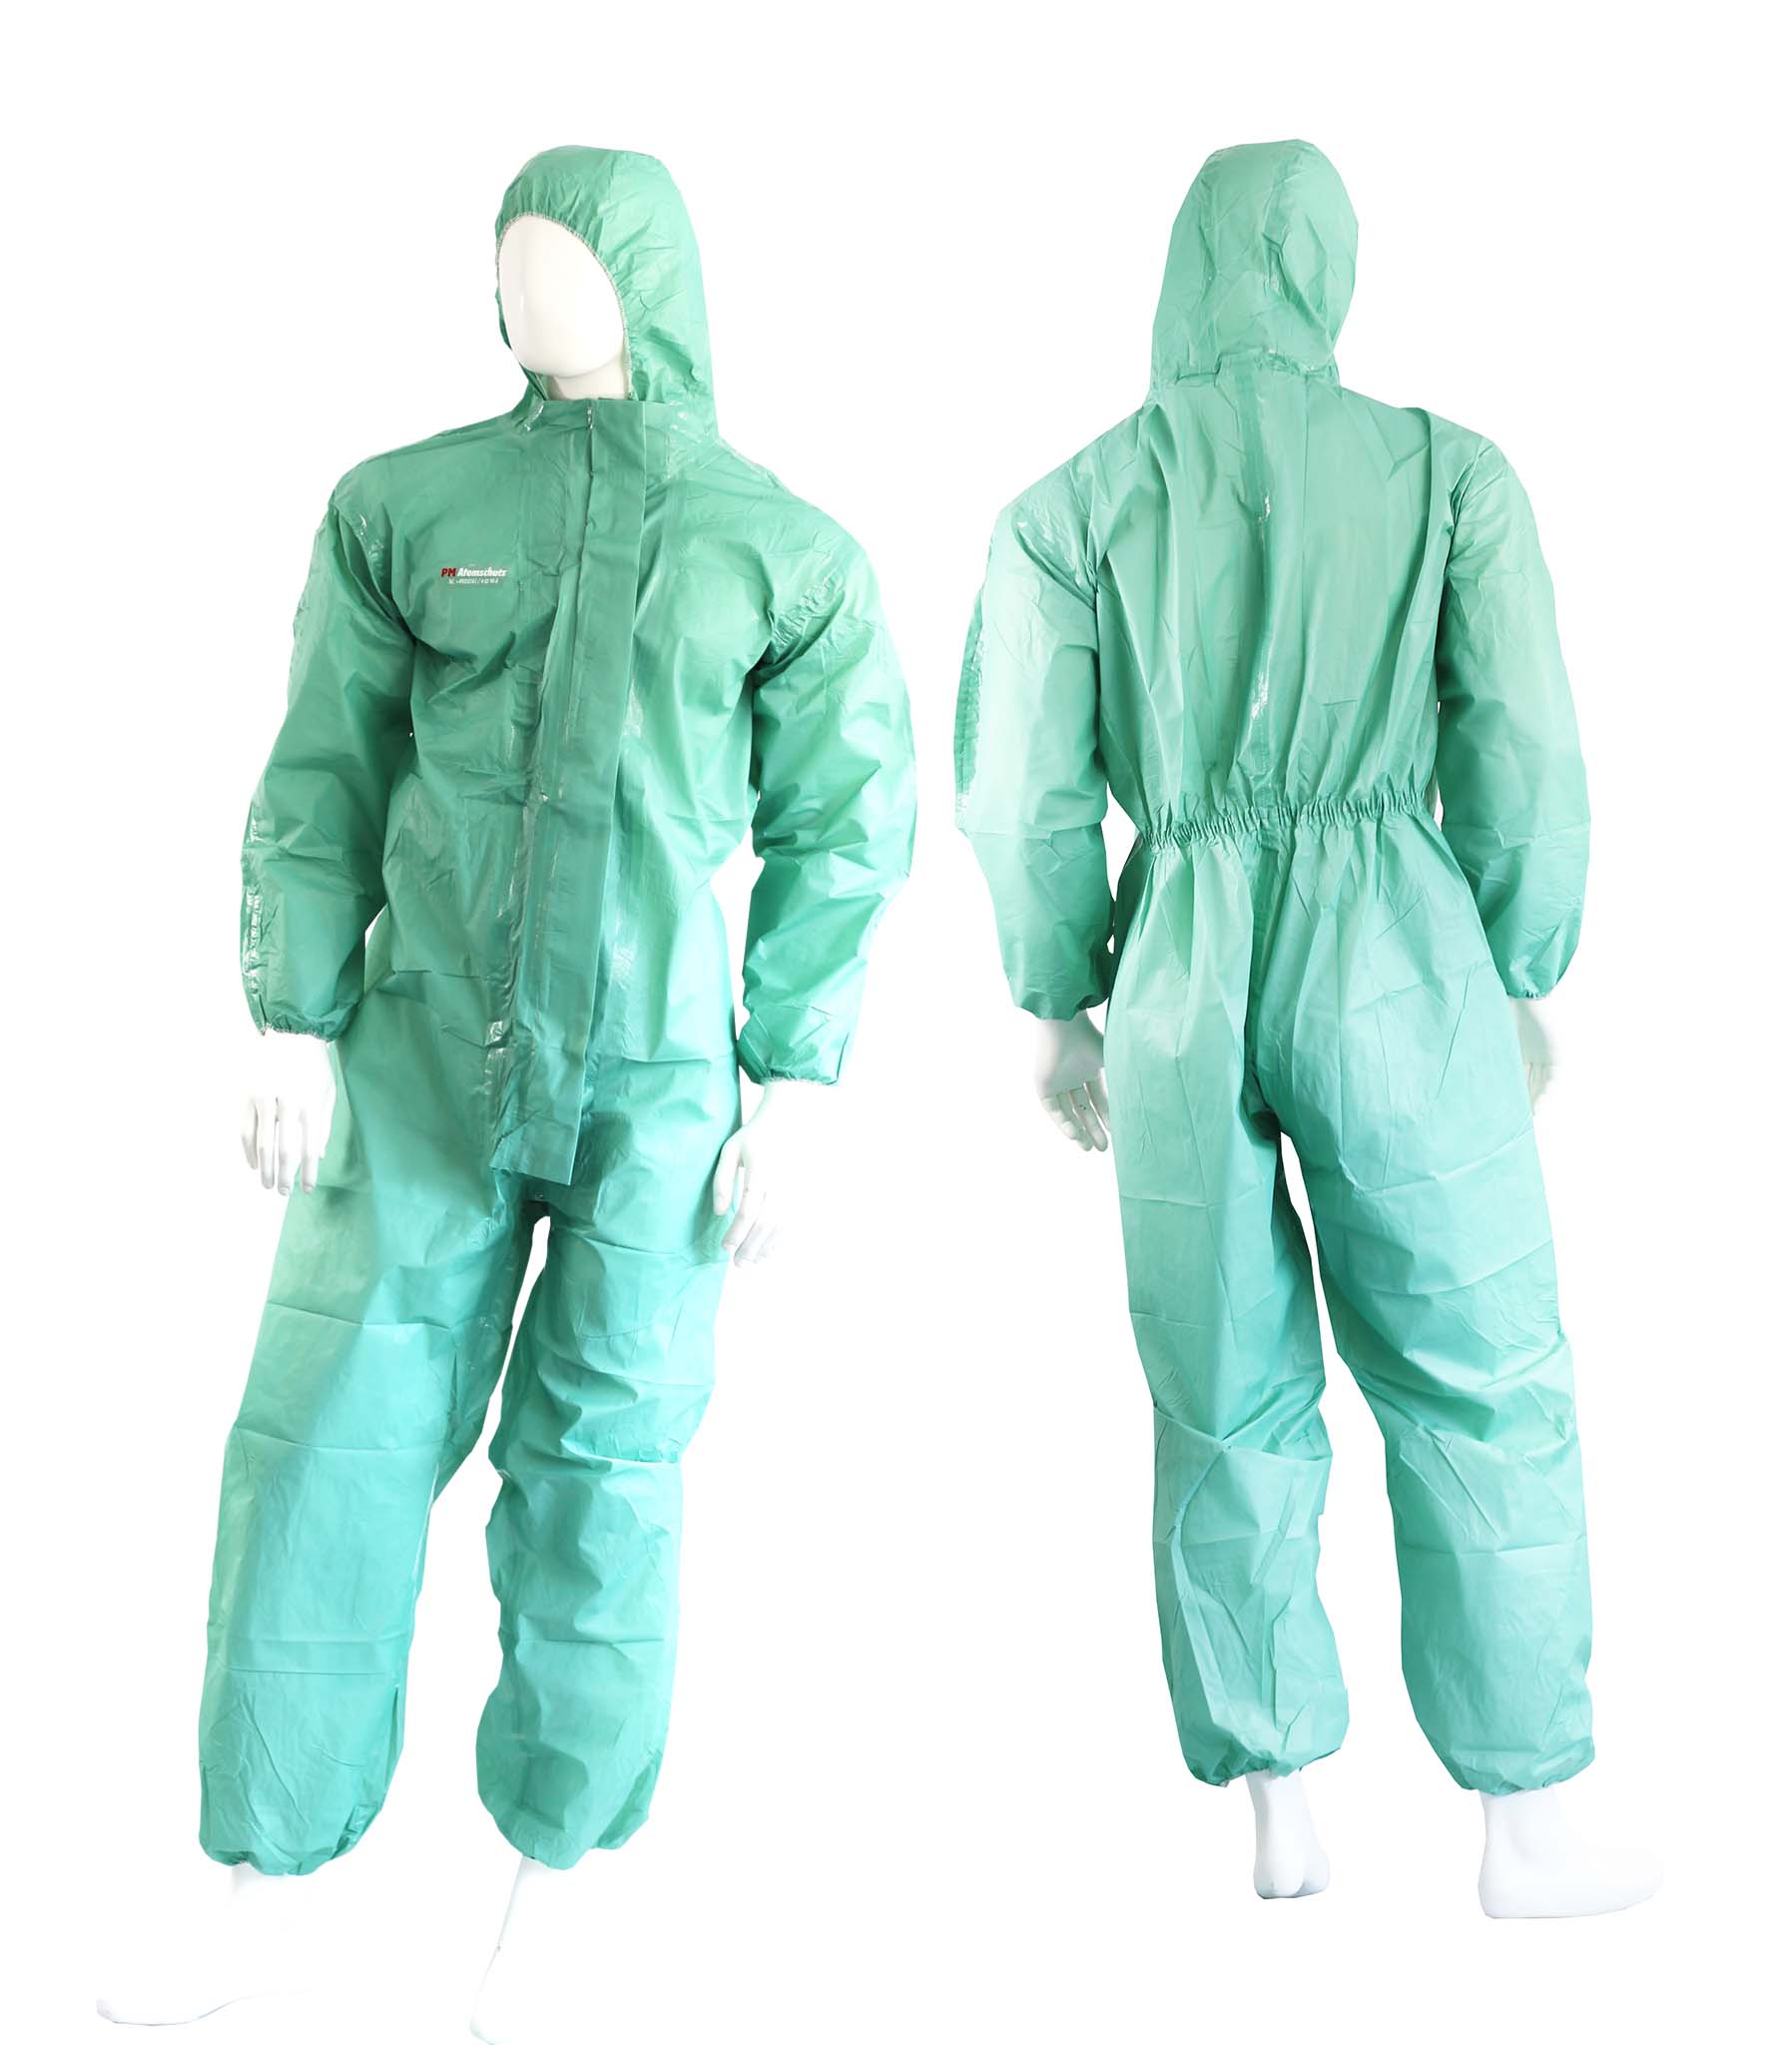 Agrarset Profi Schutzkleidung Ausrüstung Agrar Arbeitskleidung Schutz 